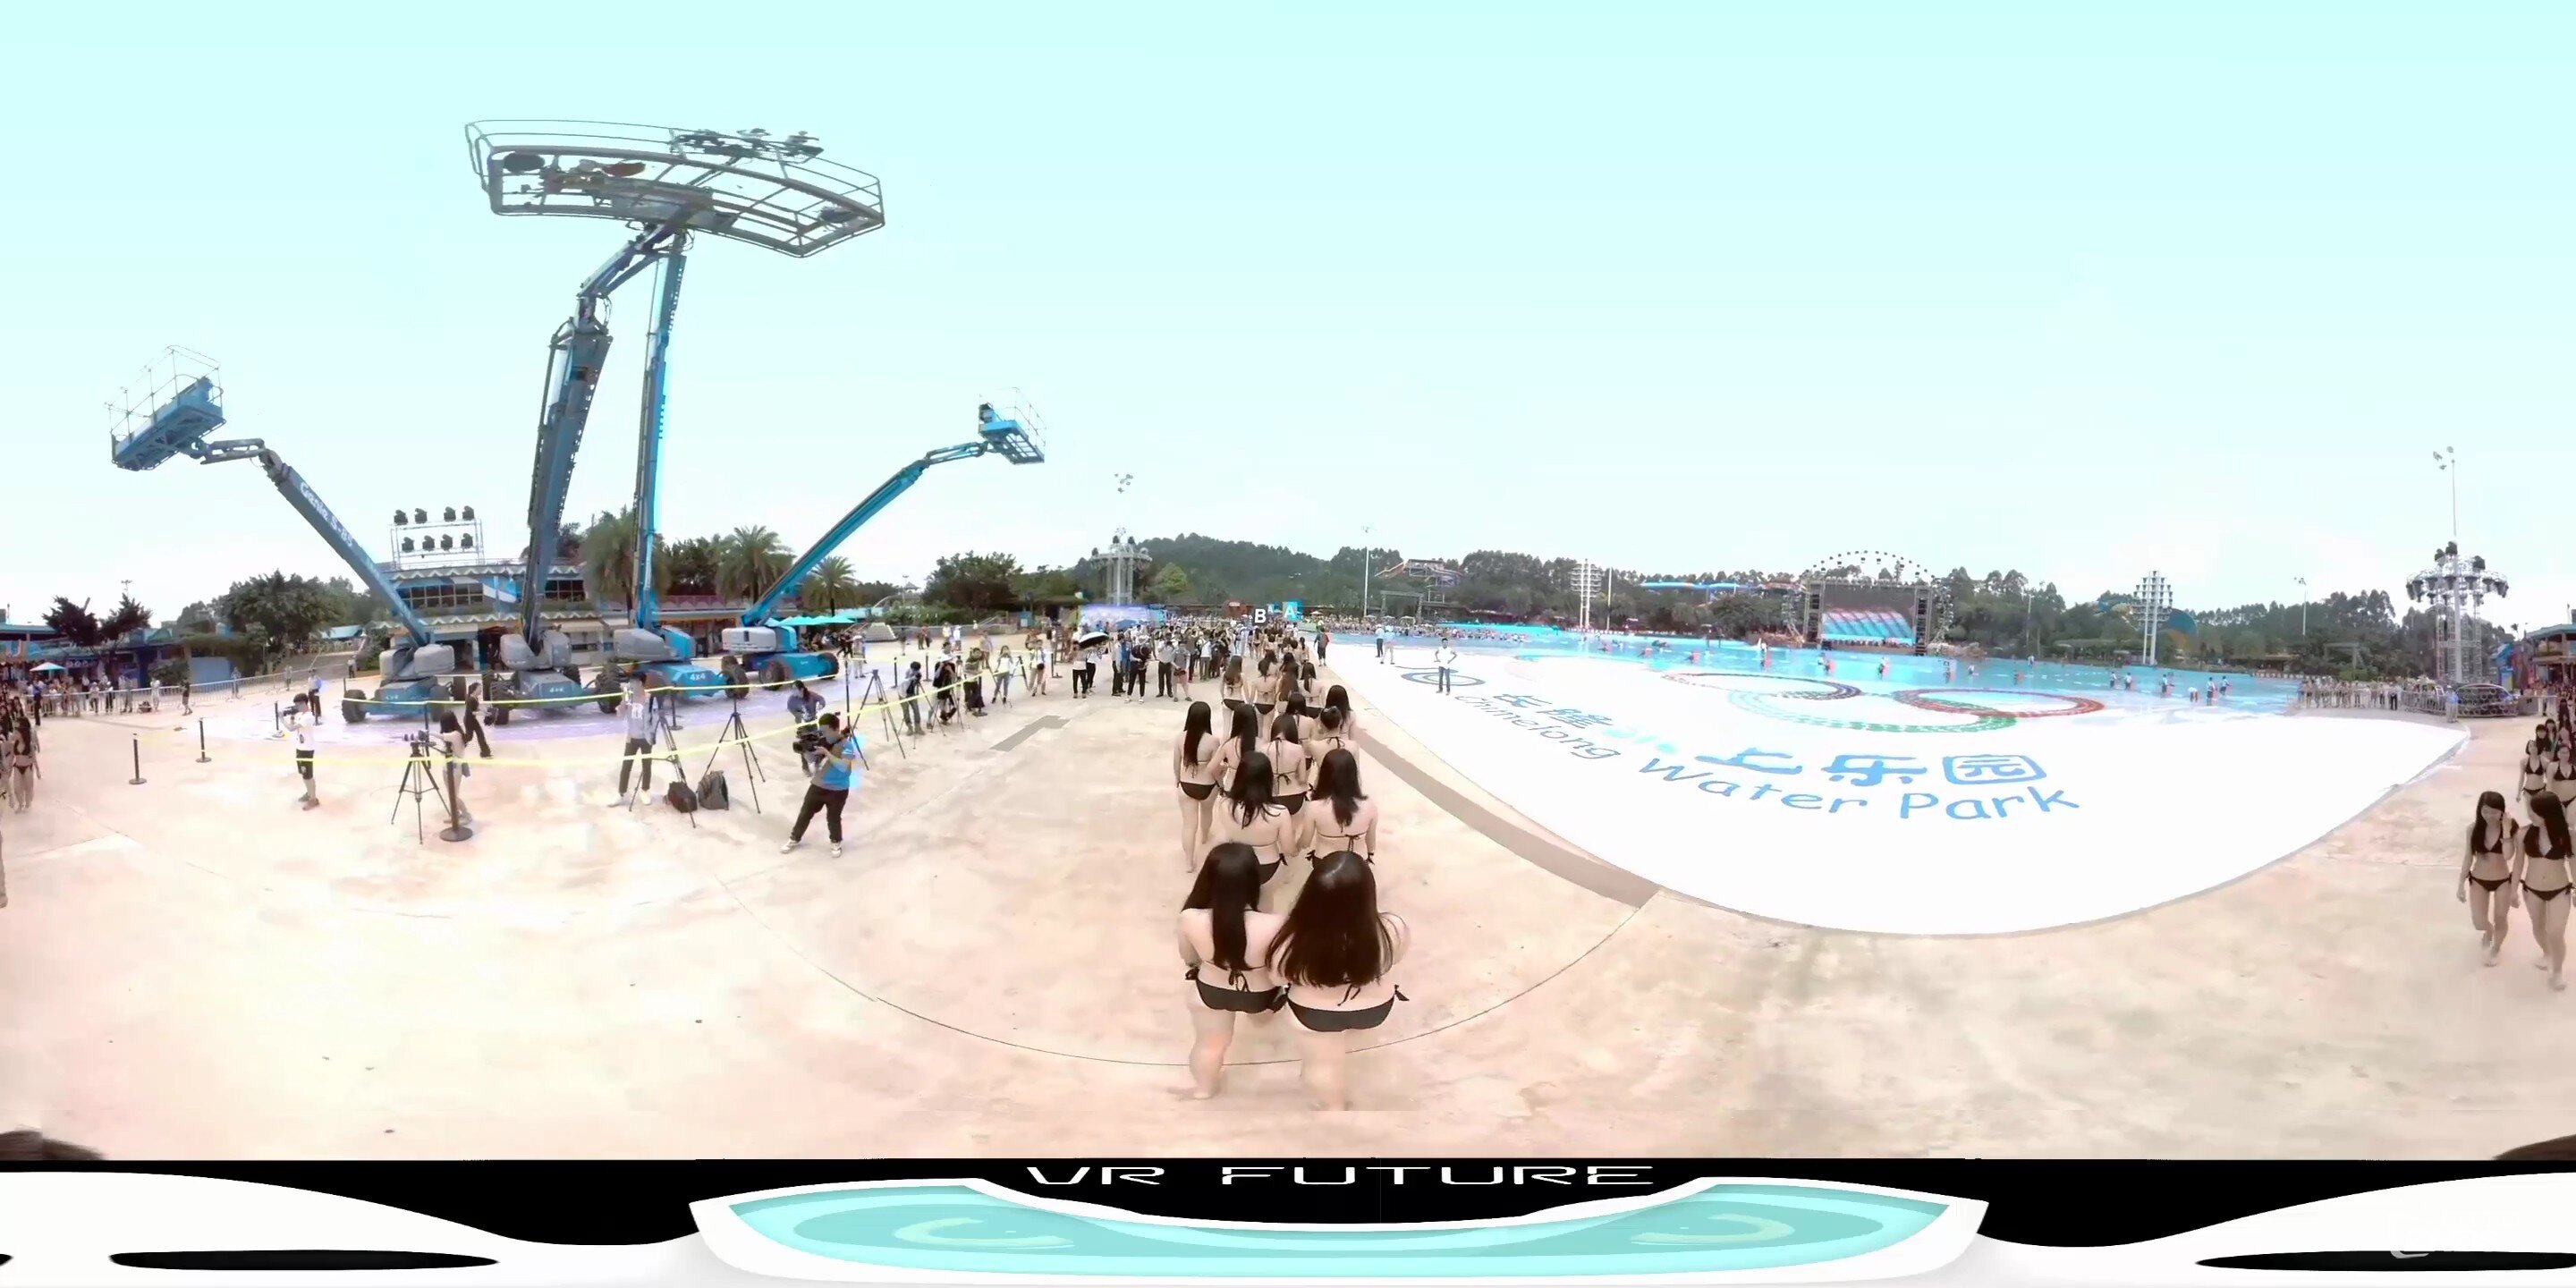 全景视频:长隆水上乐园《太阳的比基尼》VR视